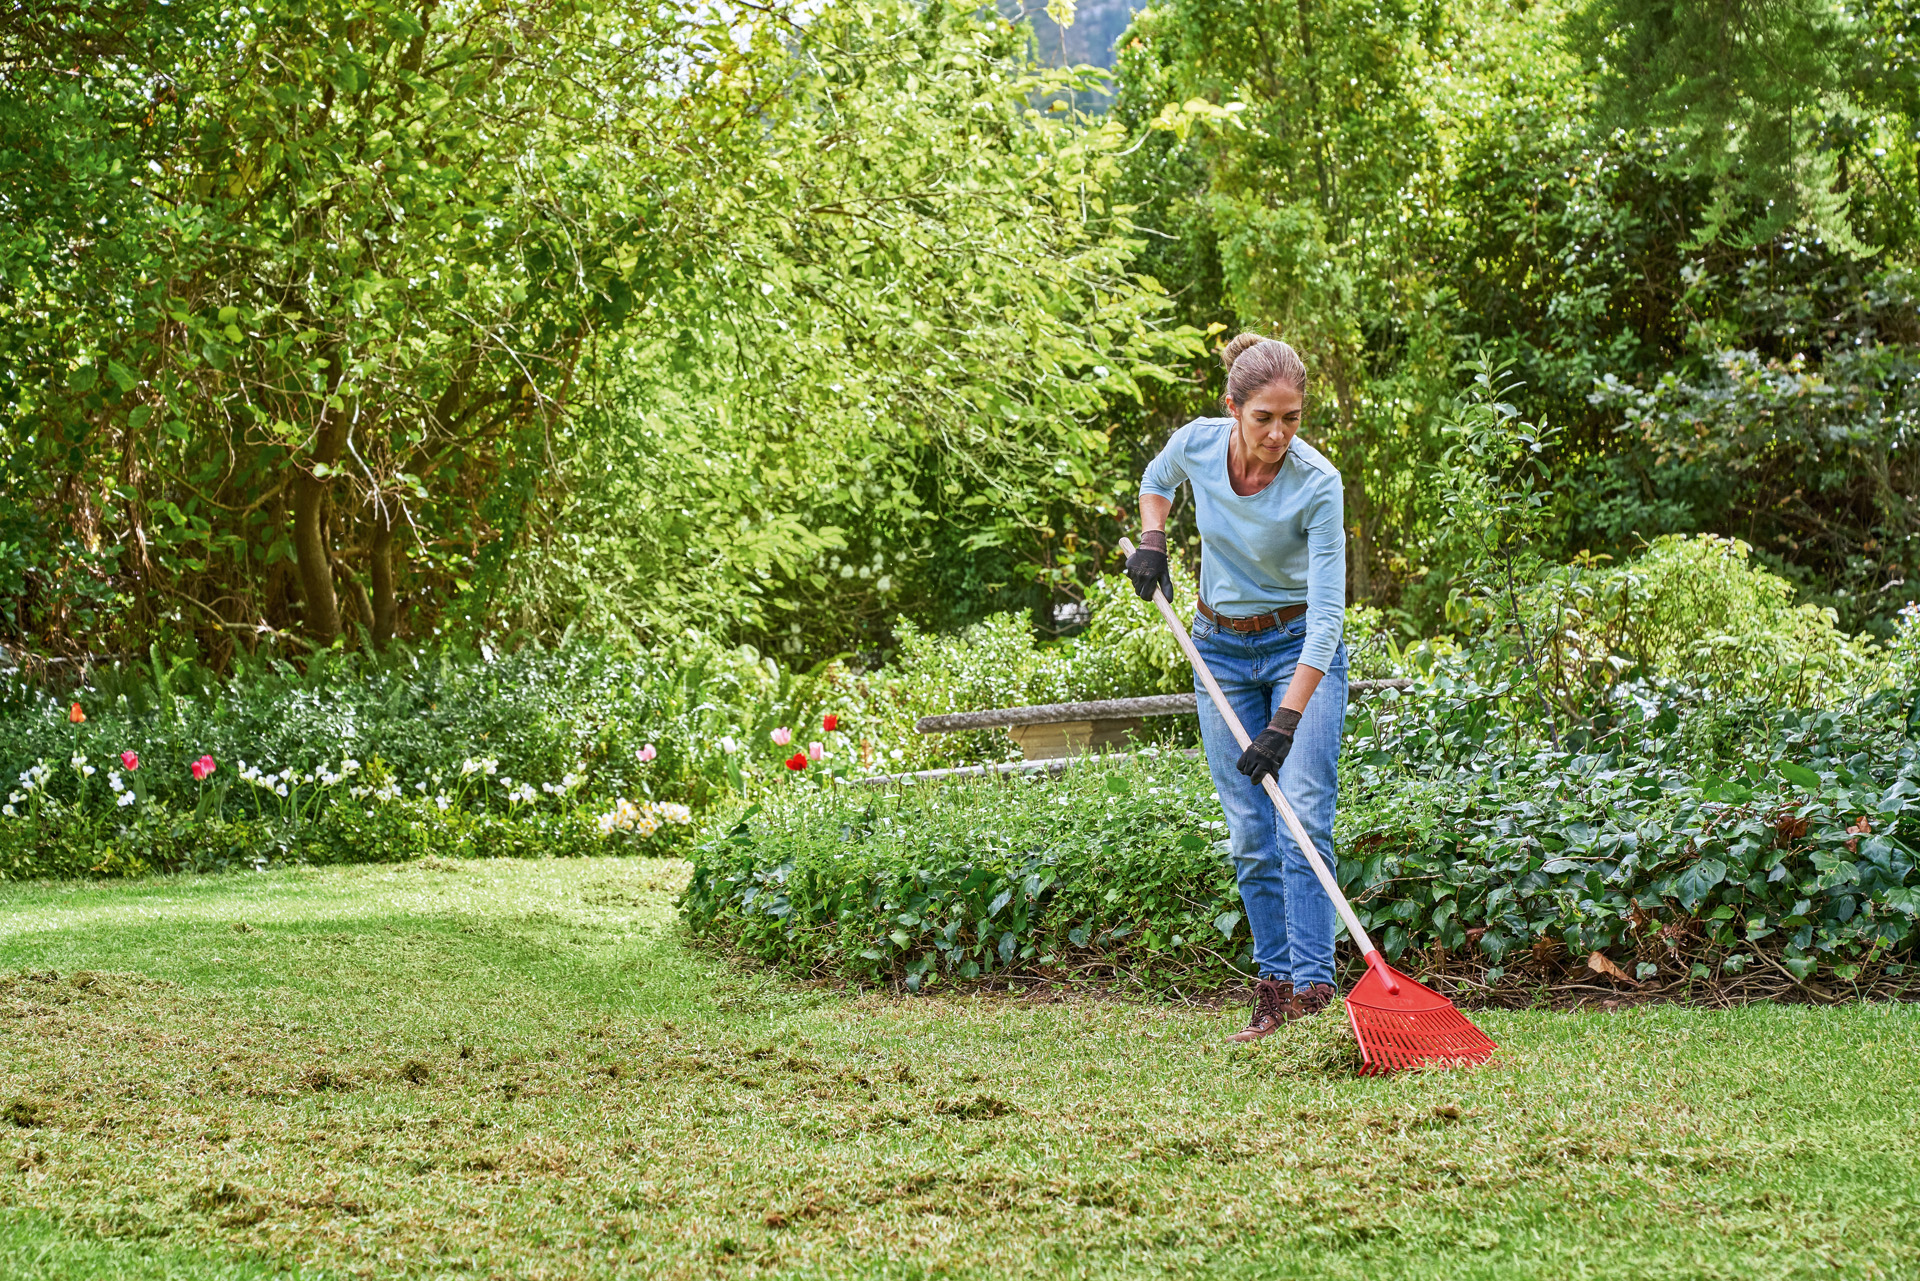 Žena provádí jarní péči o trávník a na zahradě shrabuje posečenou trávu